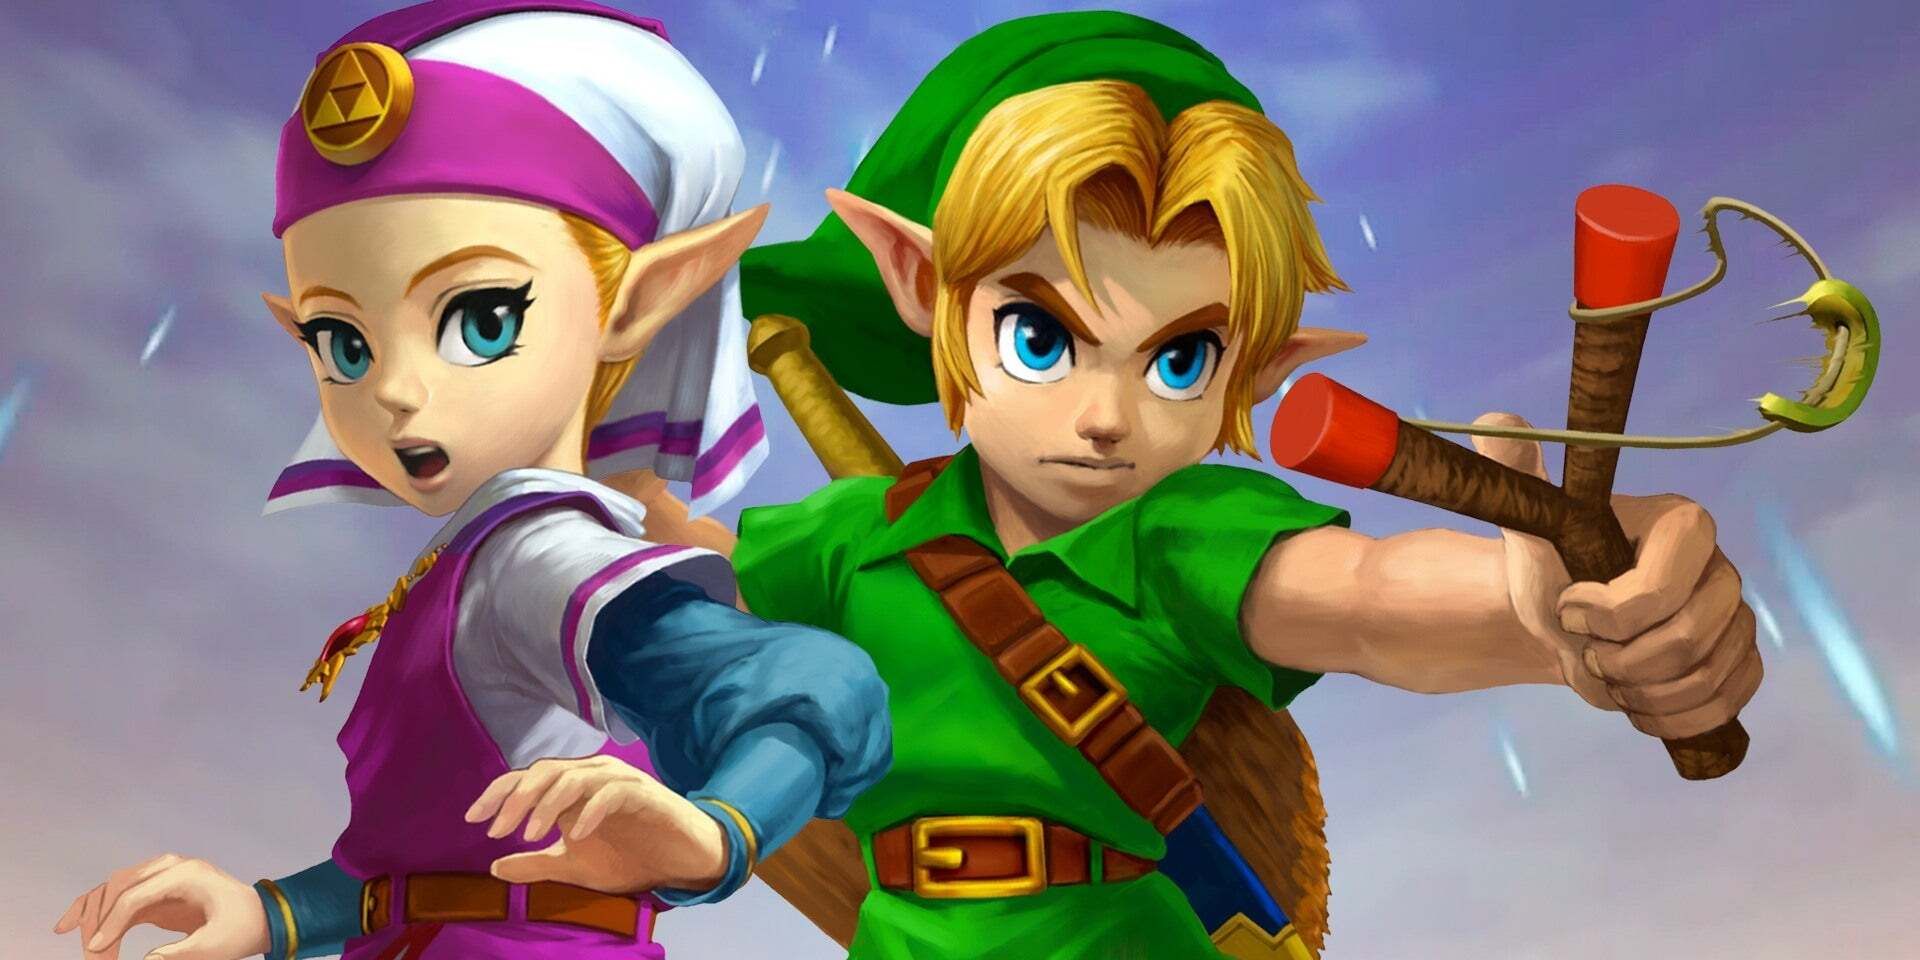 Zelda and Link side by side from Legend of Zelda Ocarina of Time